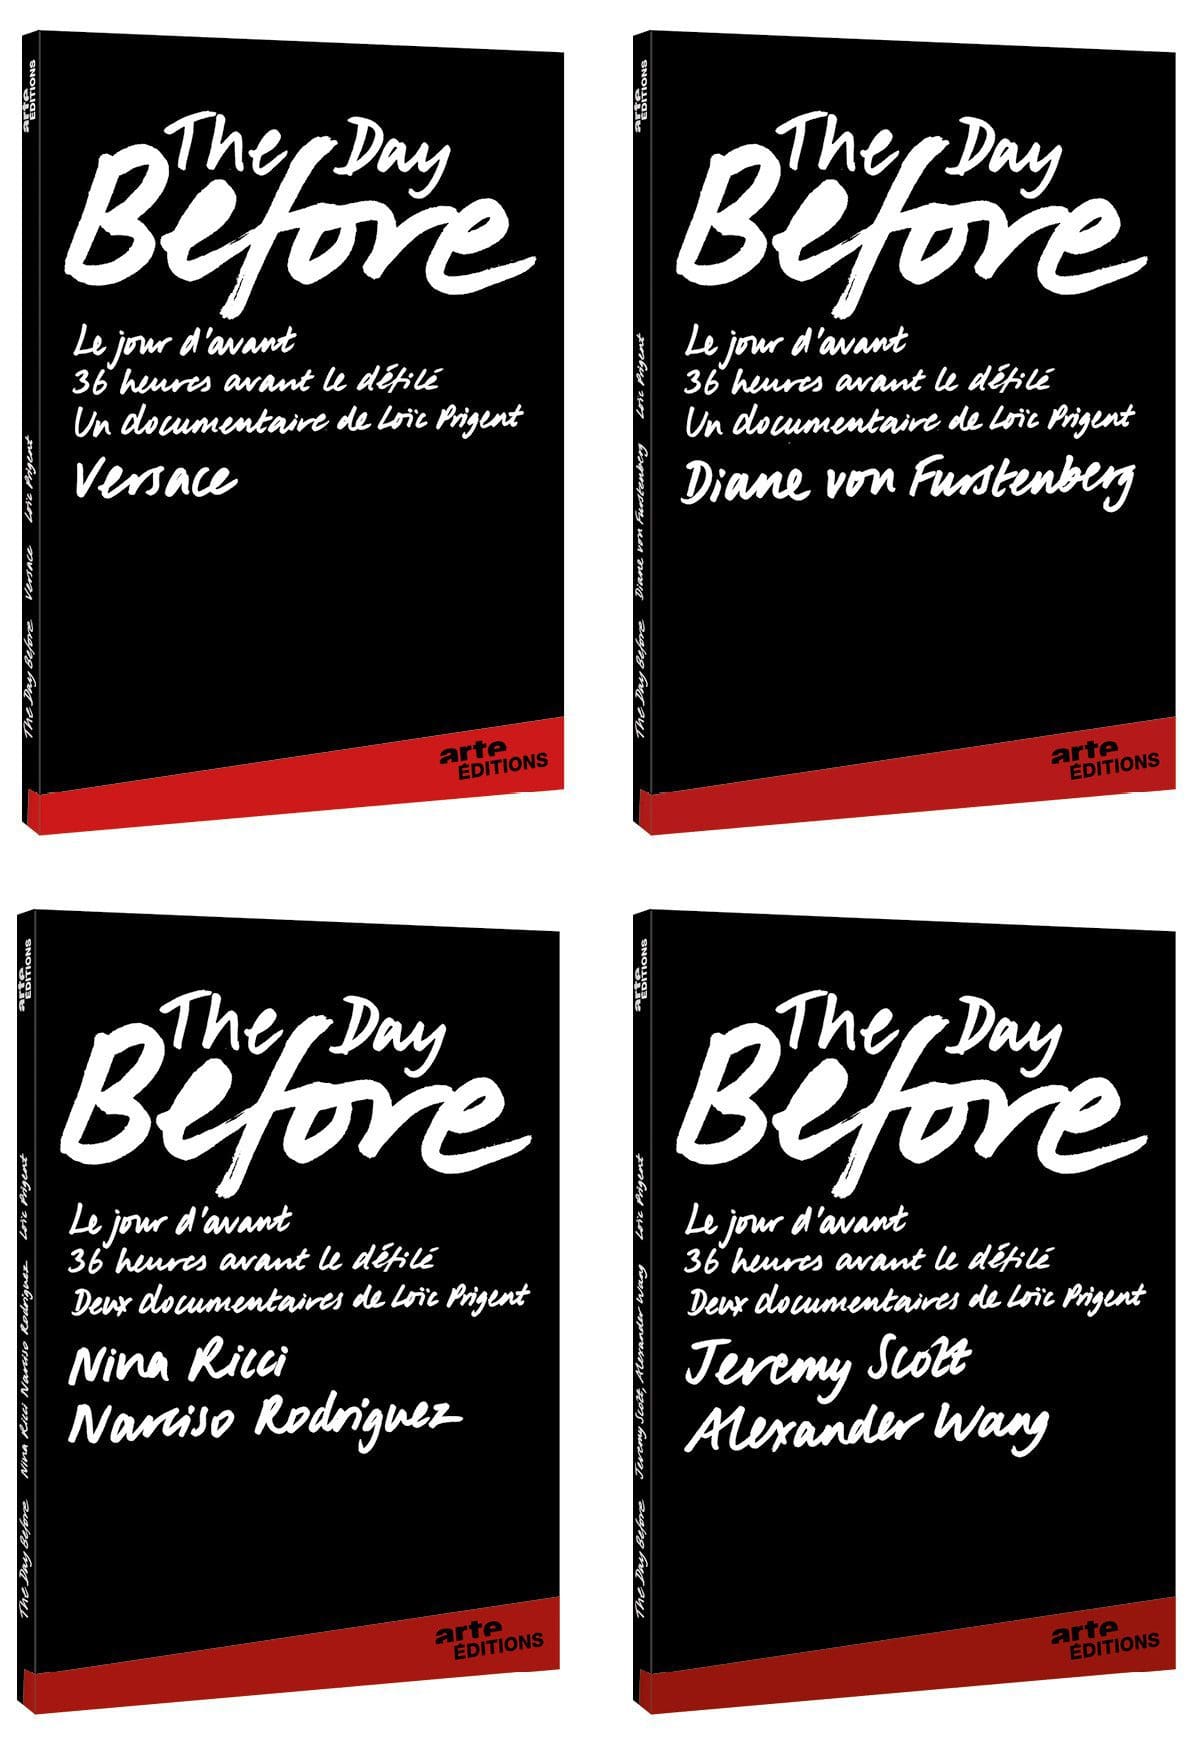 Les jaquettes des DVD Arte The day before 2, avec Versace, Diane von Furstenberg, Nina Ricci, Narciso Rodriguez, Jeremy Scott et Alexander Wang, design et typographie IchetKar